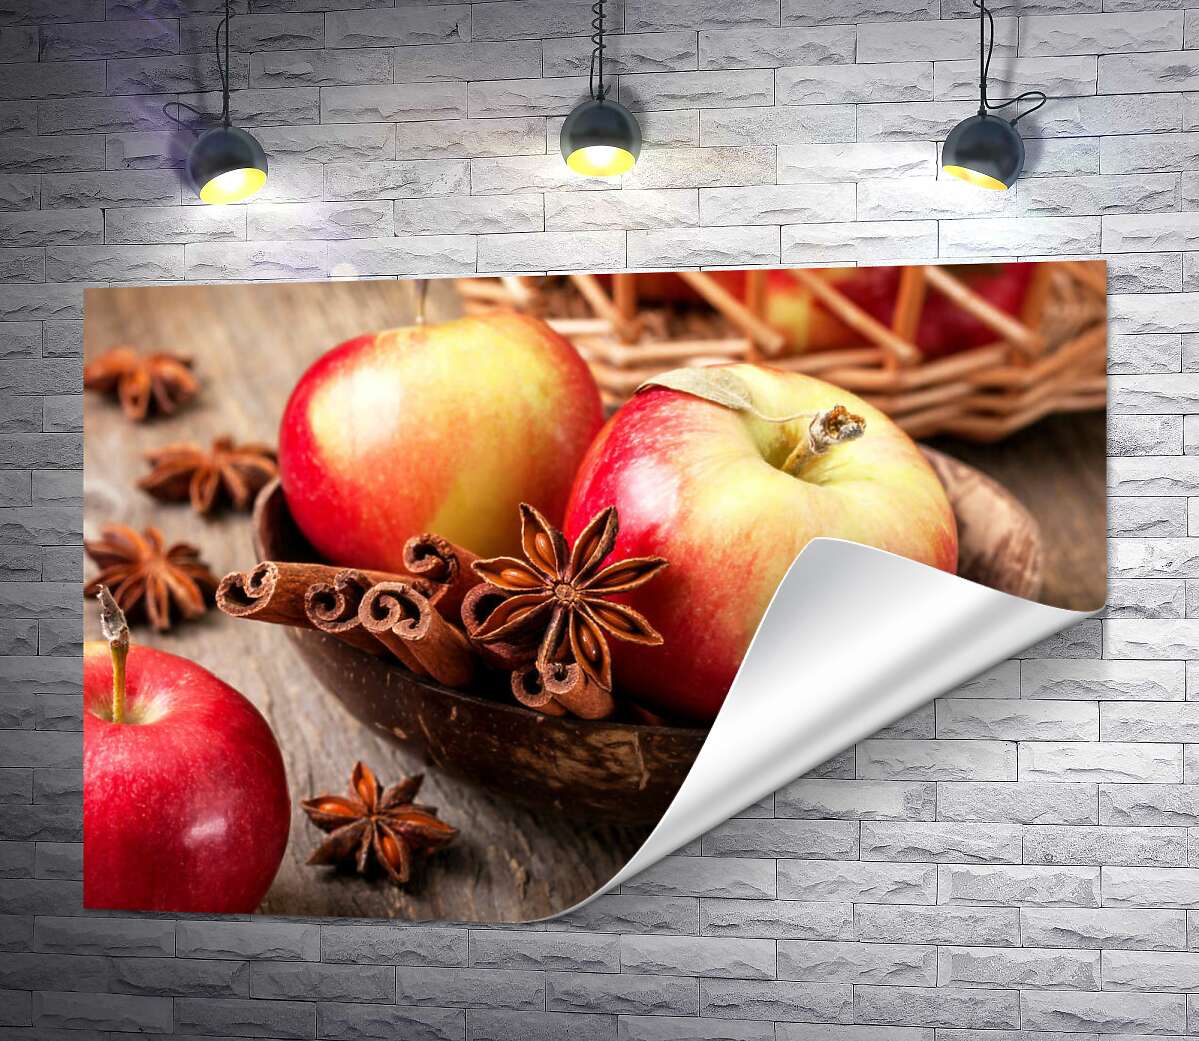 друк Запахи осені: червонобокі яблука із корицею та бодяном